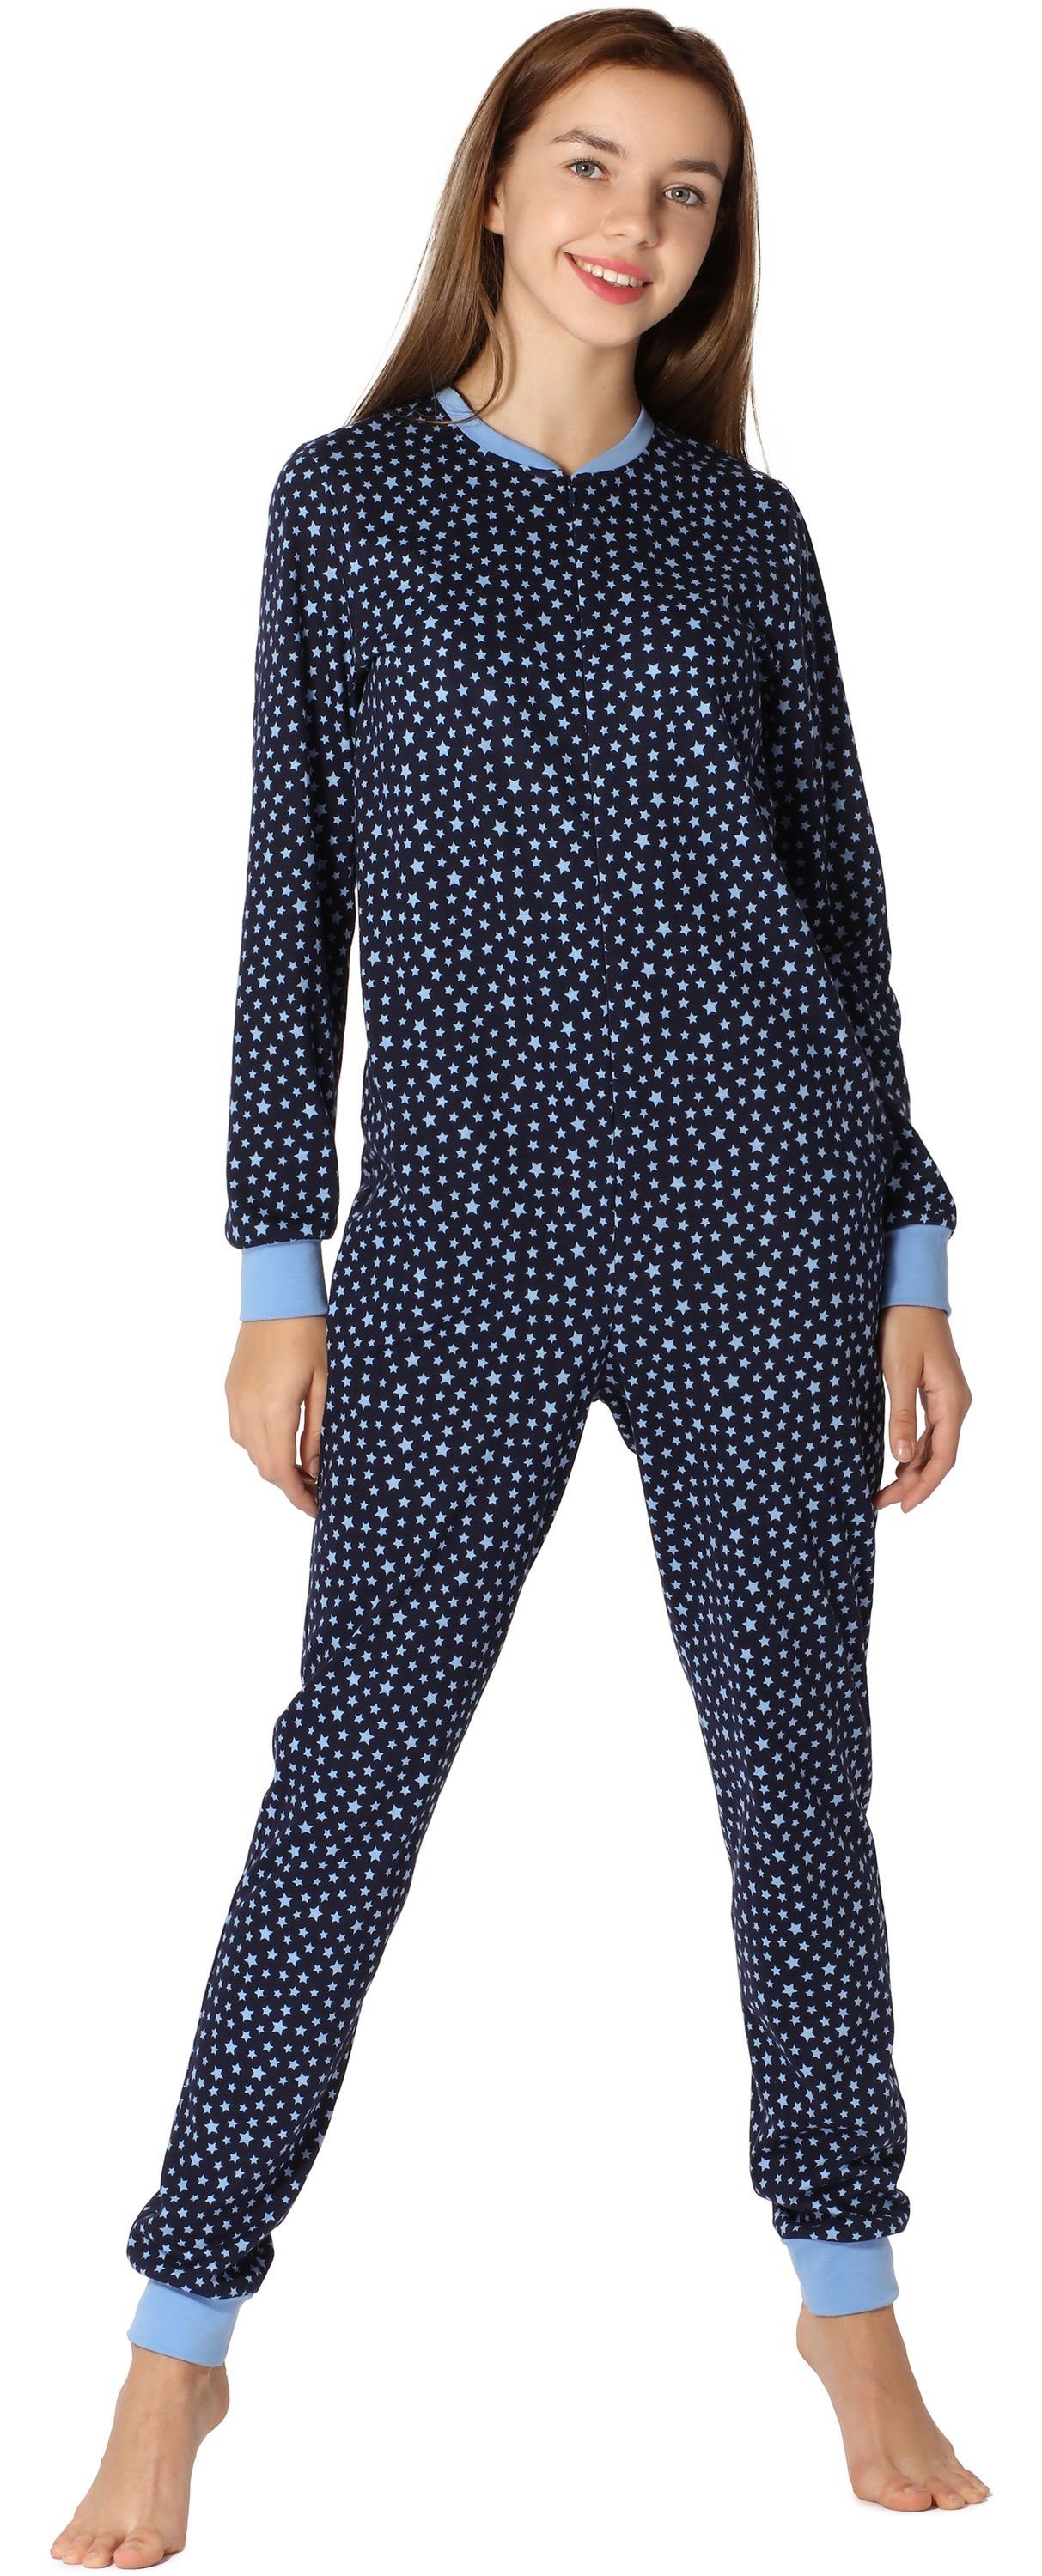 Style Schlafoverall Blau/Sterne Merry Mädchen MS10-235 Schlafanzug Jugend Schlafanzug